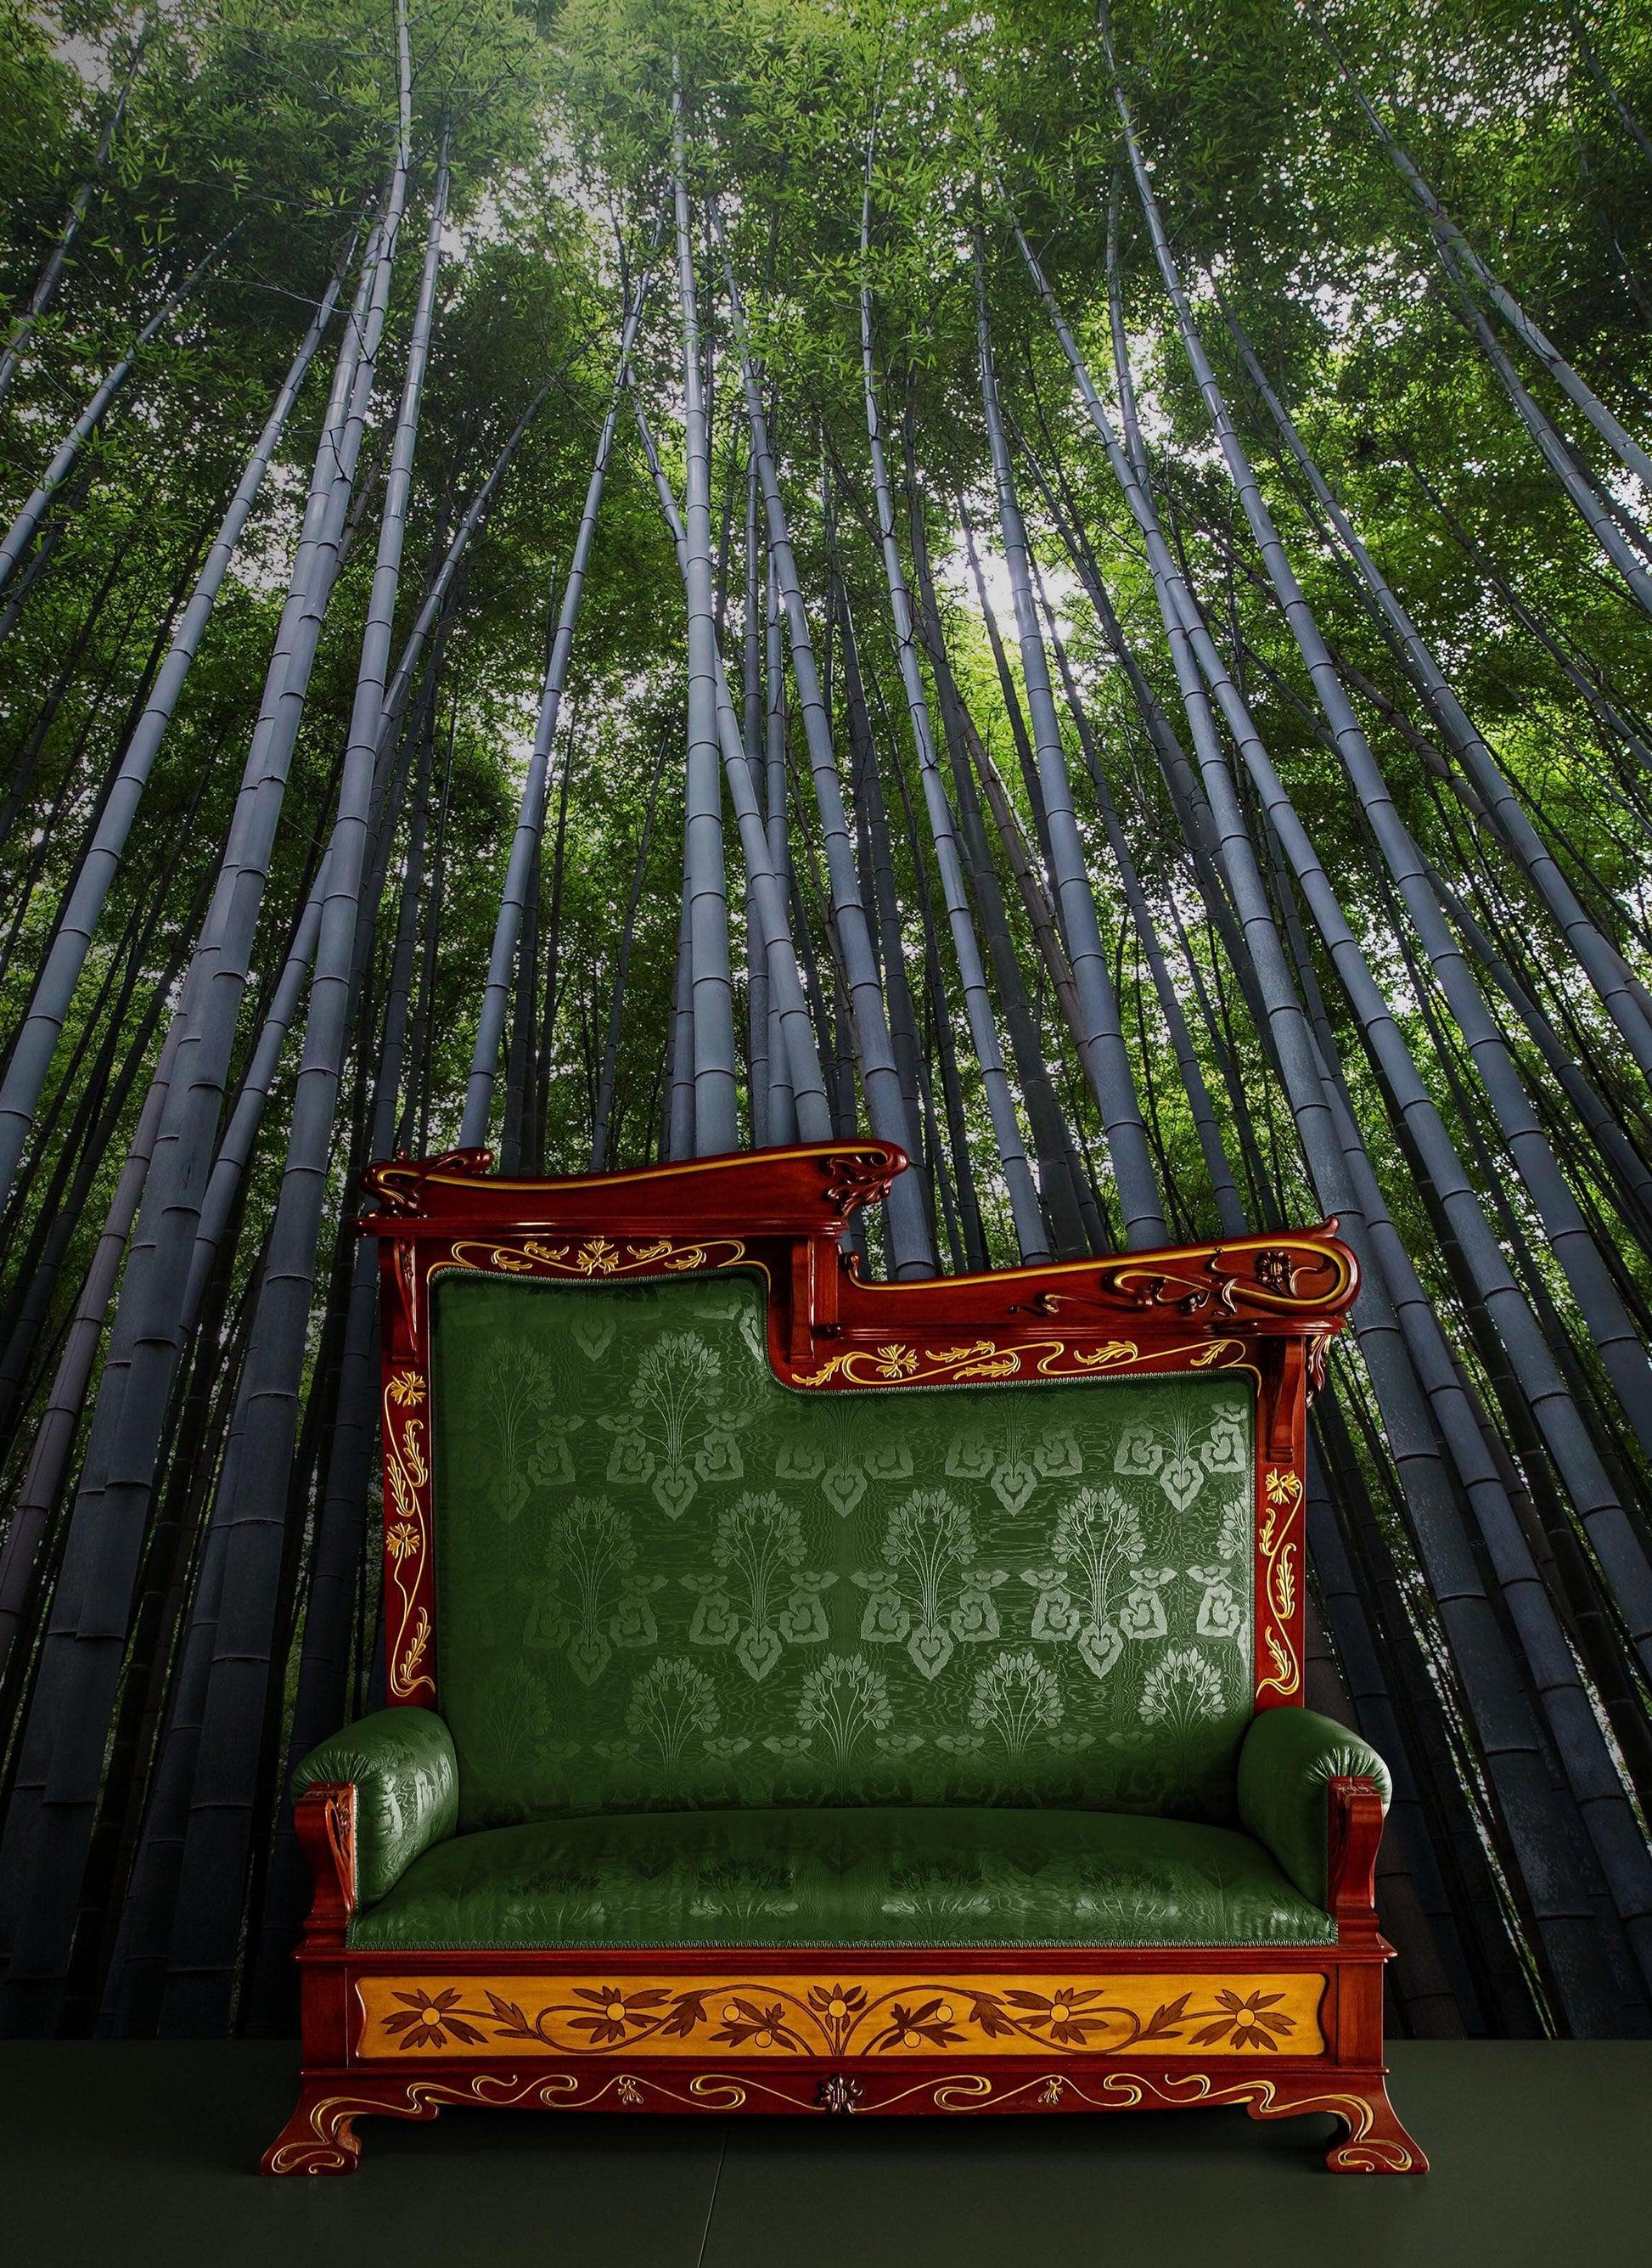 Bamboo Forest Wallpaper Mural